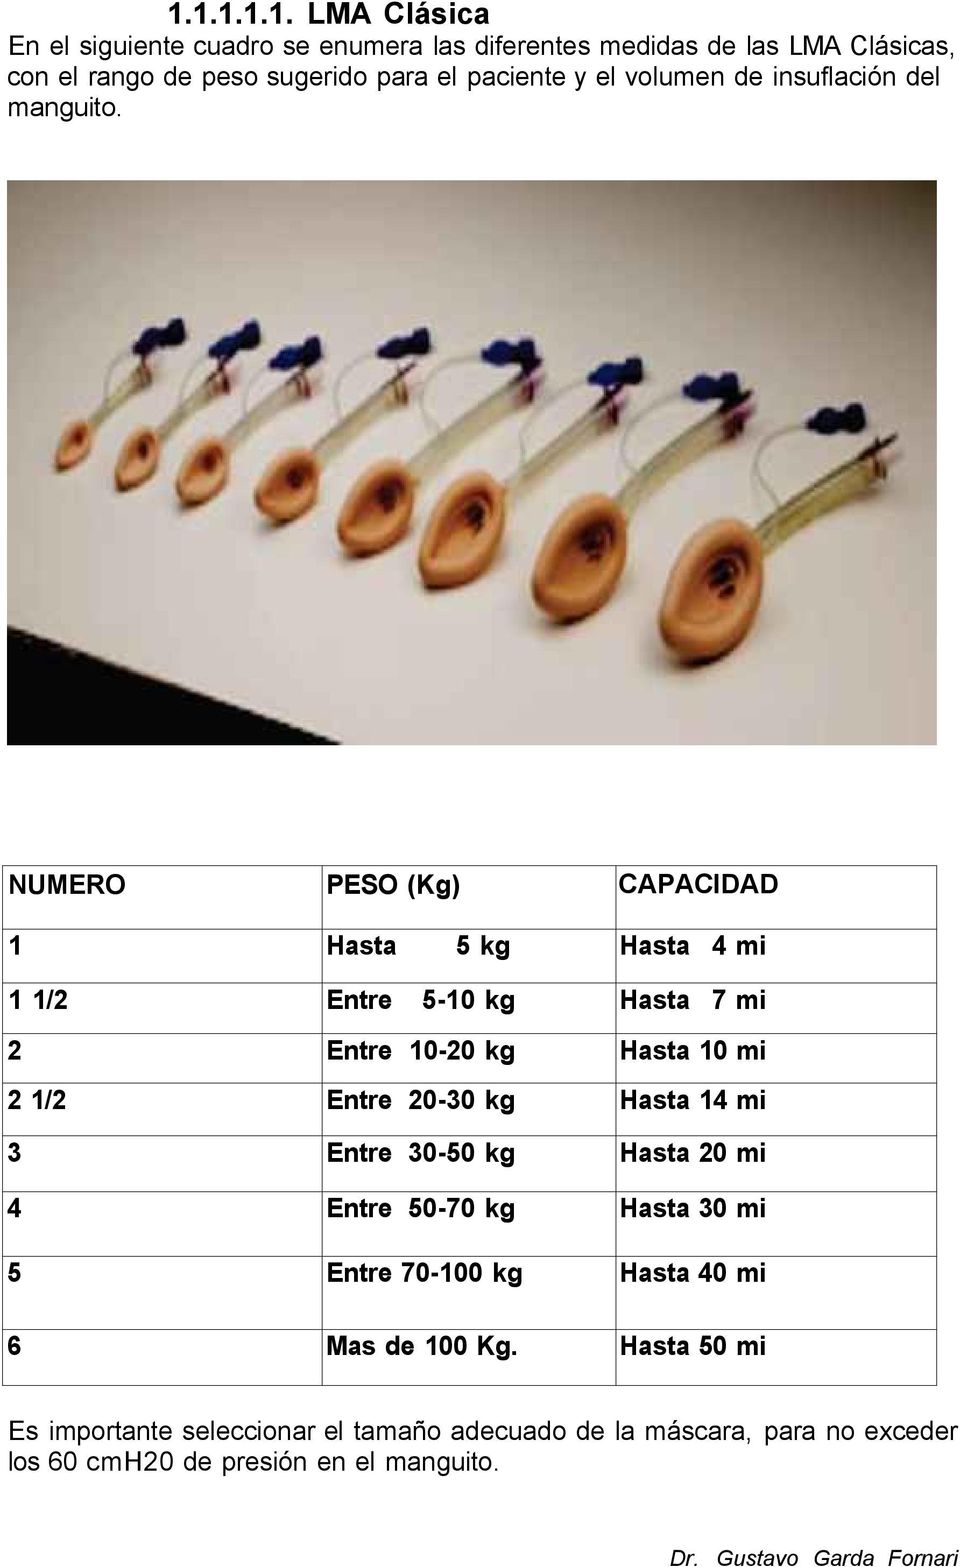 NUMERO PESO (Kg) CAPACIDAD 1 Hasta 5 kg Hasta 4 mi 1 1/2 Entre 5-10 kg Hasta 7 mi 2 Entre 10-20 kg Hasta 10 mi 2 1/2 Entre 20-30 kg Hasta 14 mi 3